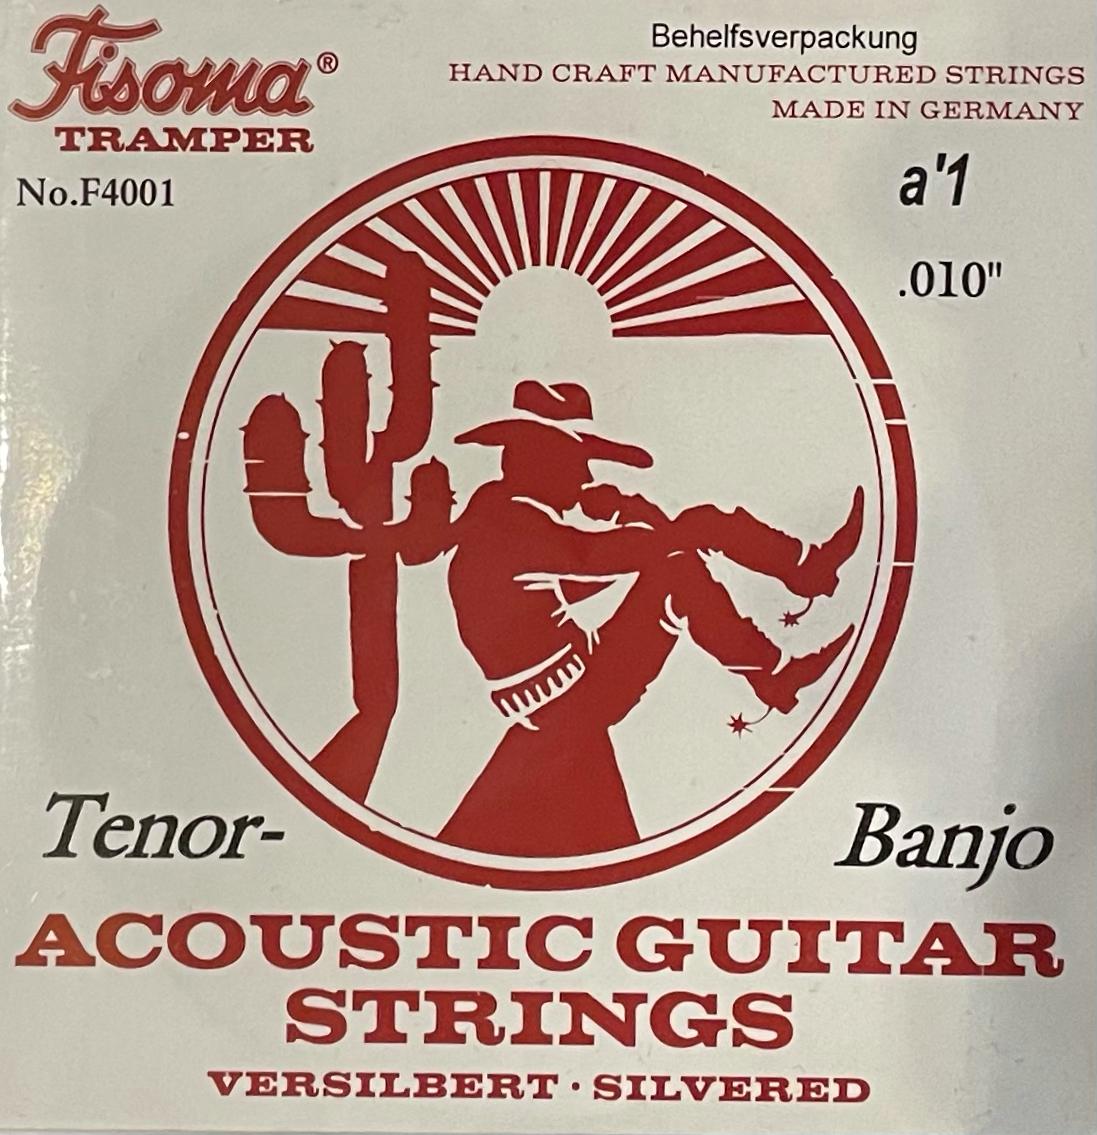 Fisoma Tramper F4001 Tenor-Banjo Strings